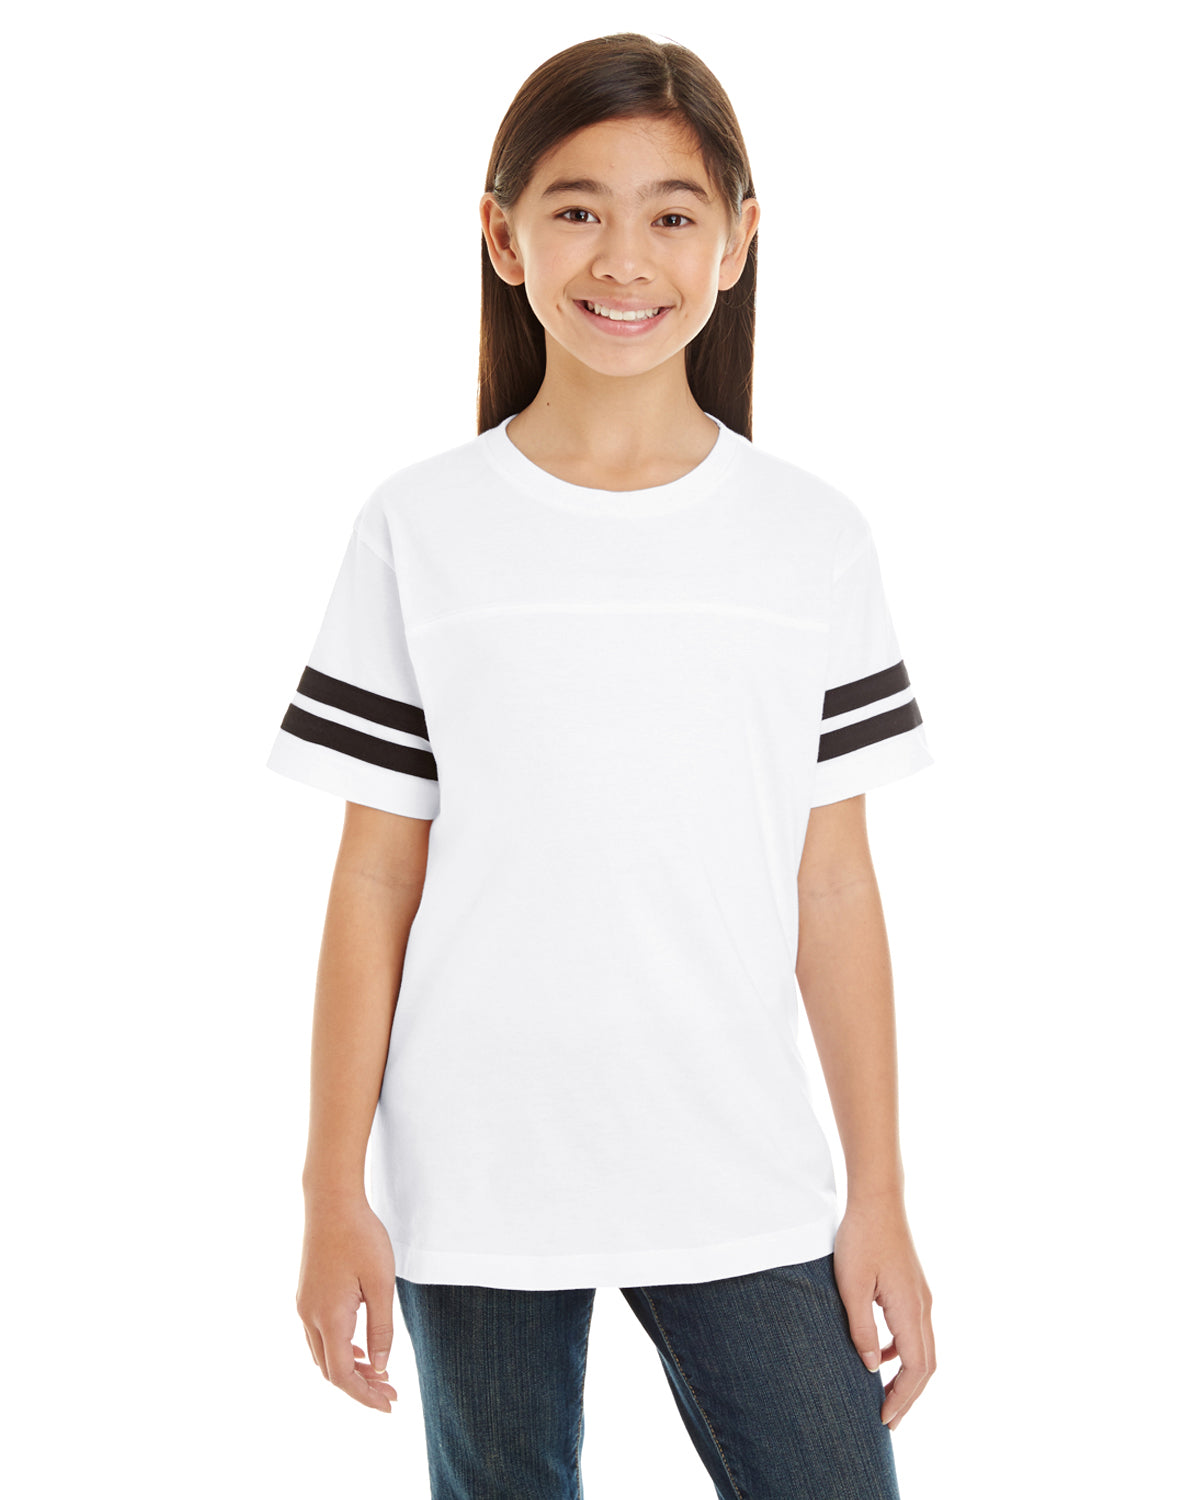 Youth Football Fine Jersey T-Shirt LAT 6137